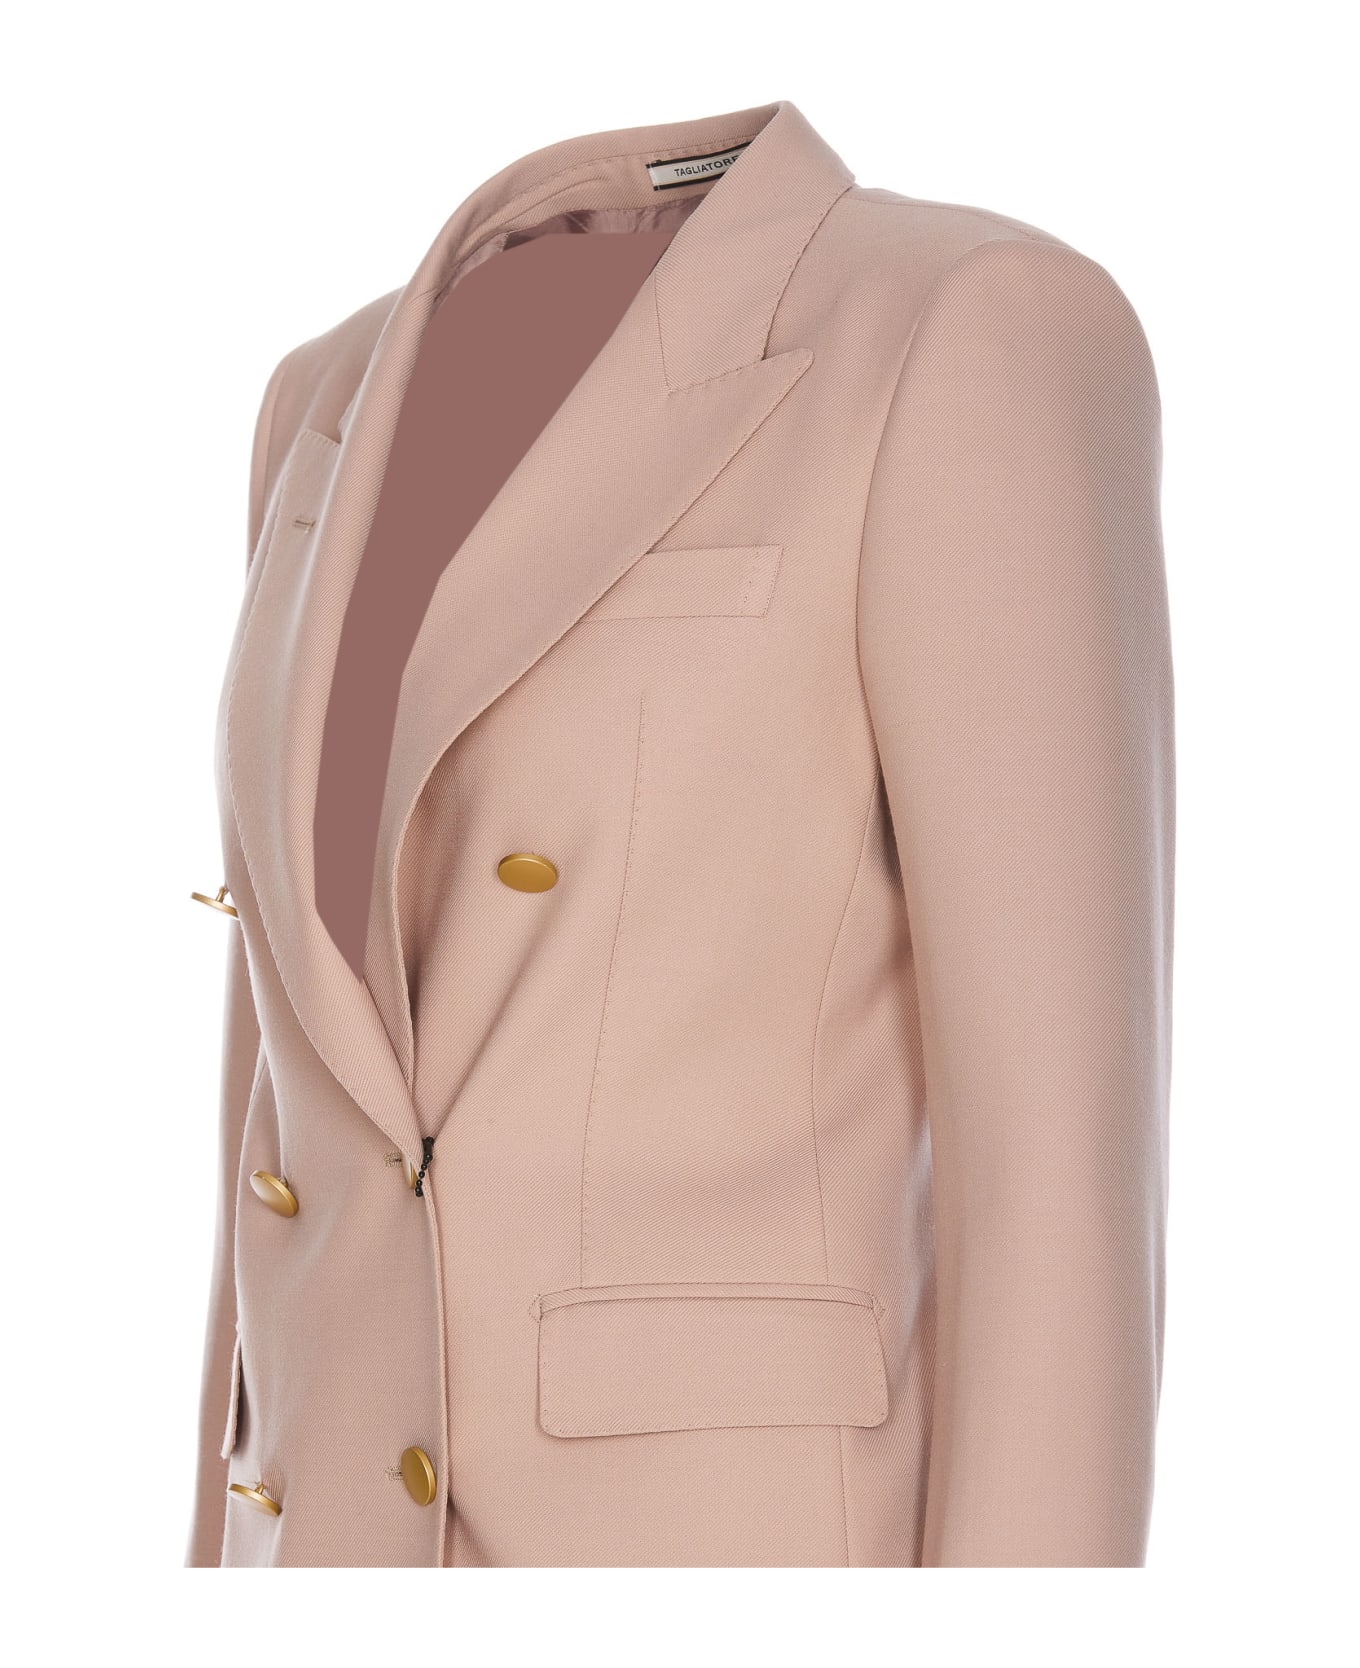 Tagliatore T-parigi Suit - Pink ワンピース＆ドレス